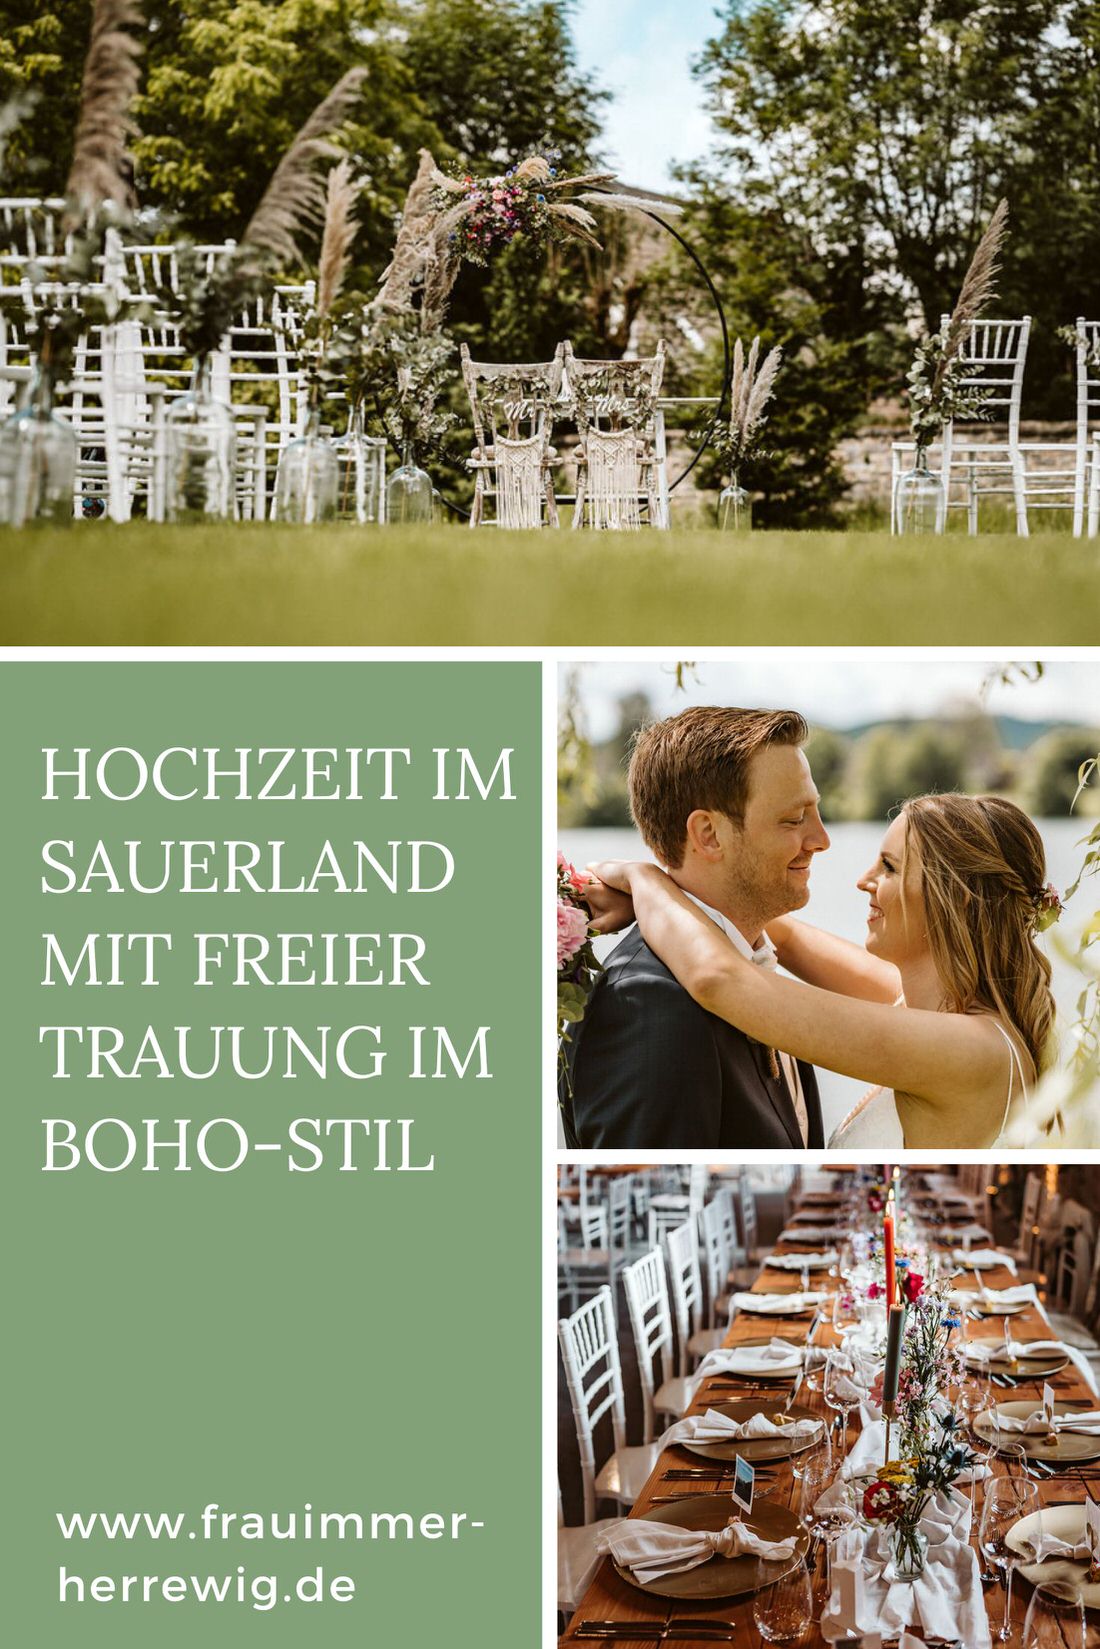 Hochzeit sauerland – gesehen bei frauimmer-herrewig.de